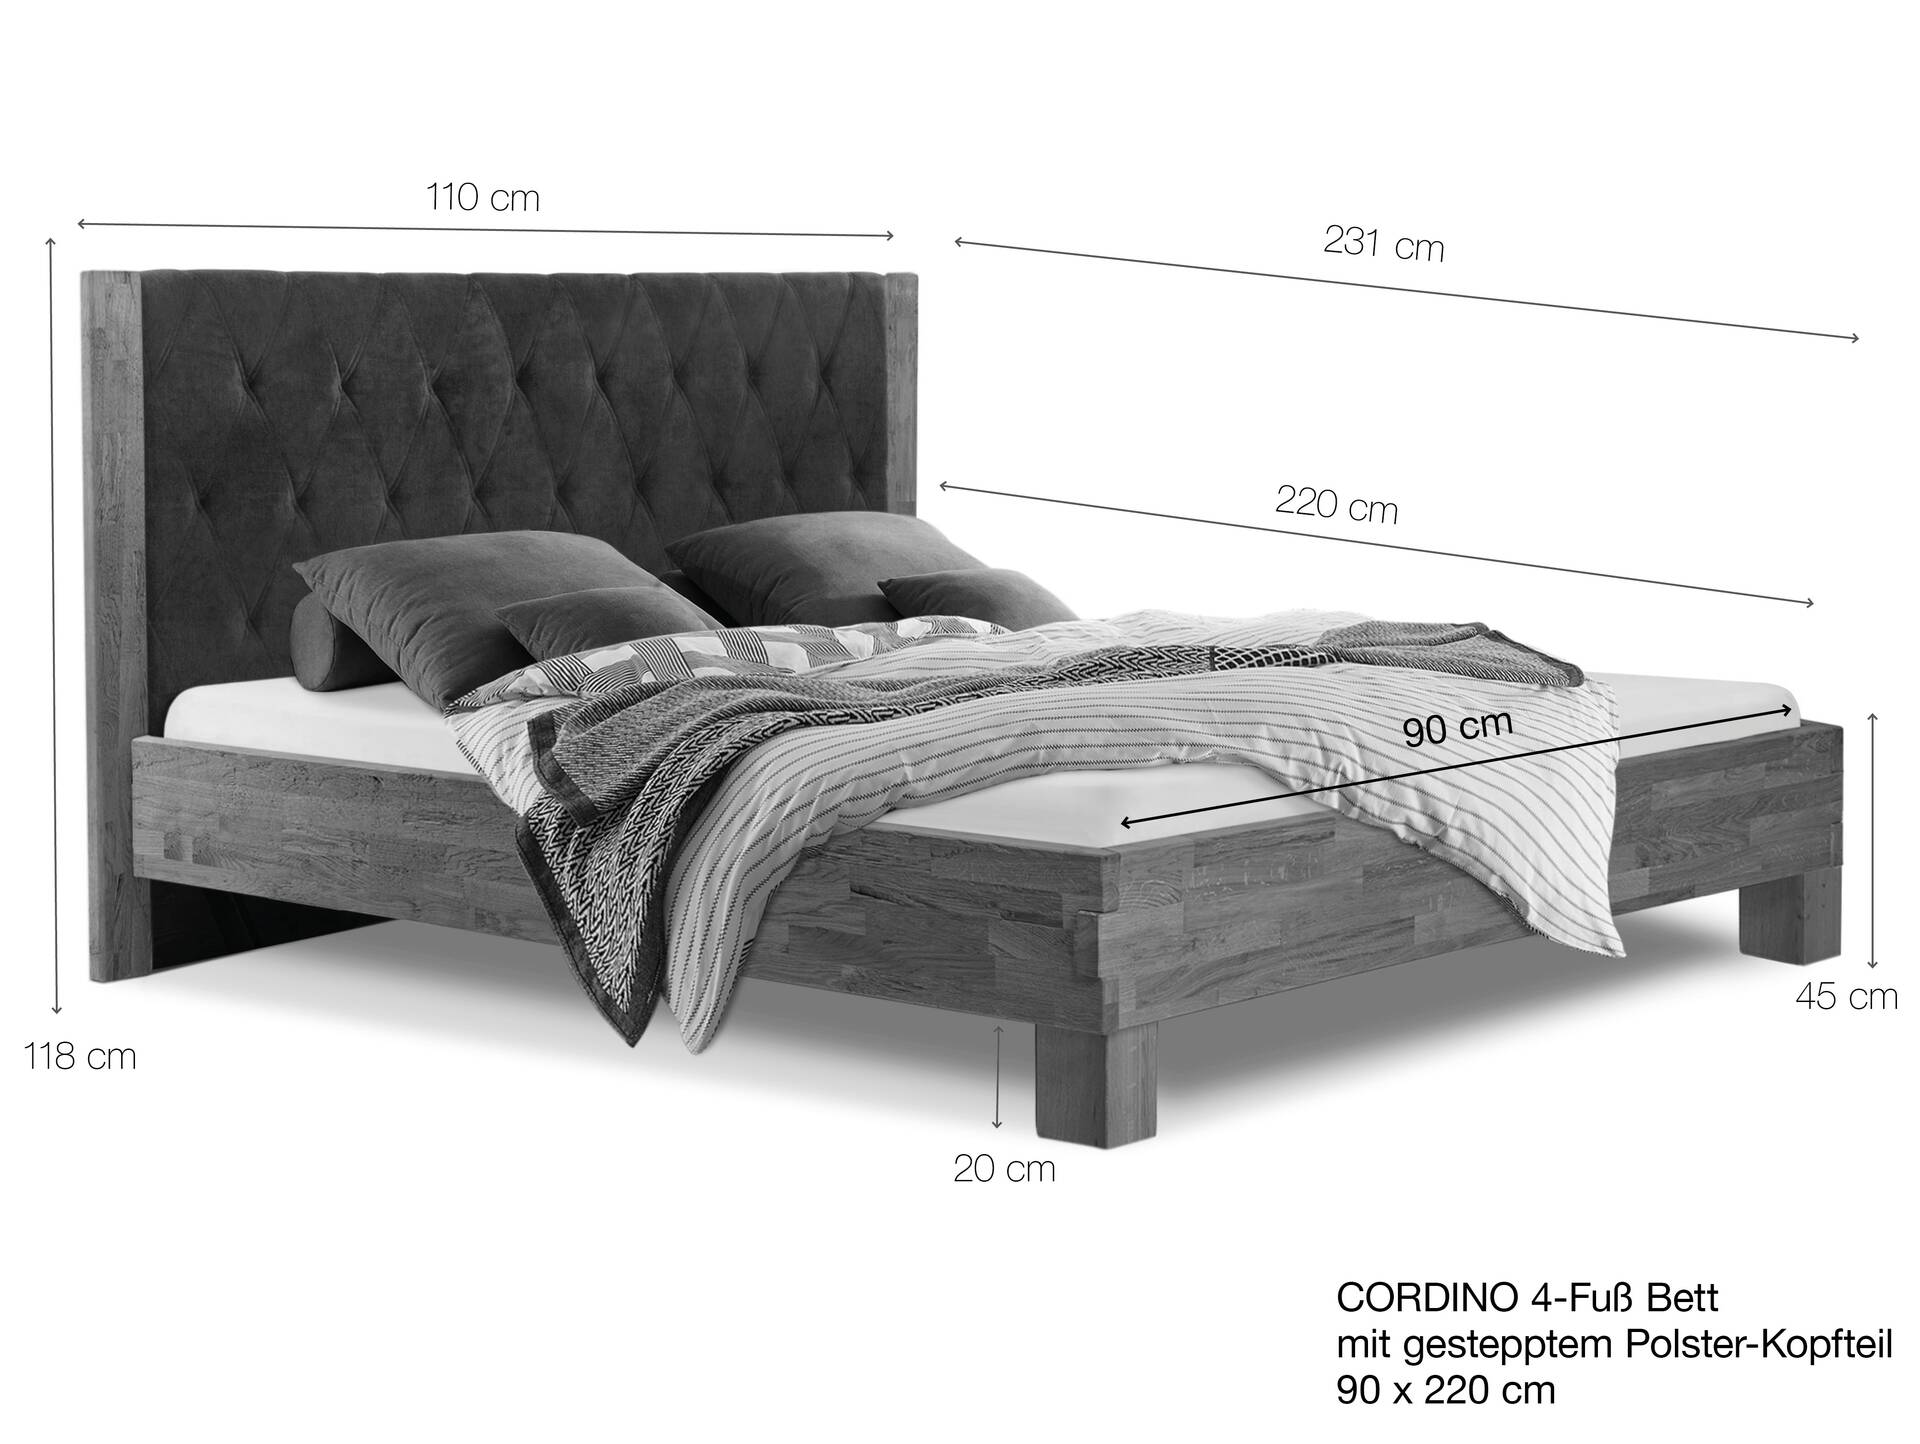 CORDINO 4-Fuß-Bett aus Eiche mit gestepptem Polster-Kopfteil, Material Massivholz 90 x 220 cm | Eiche unbehandelt | Stoff Braun | gebürstet